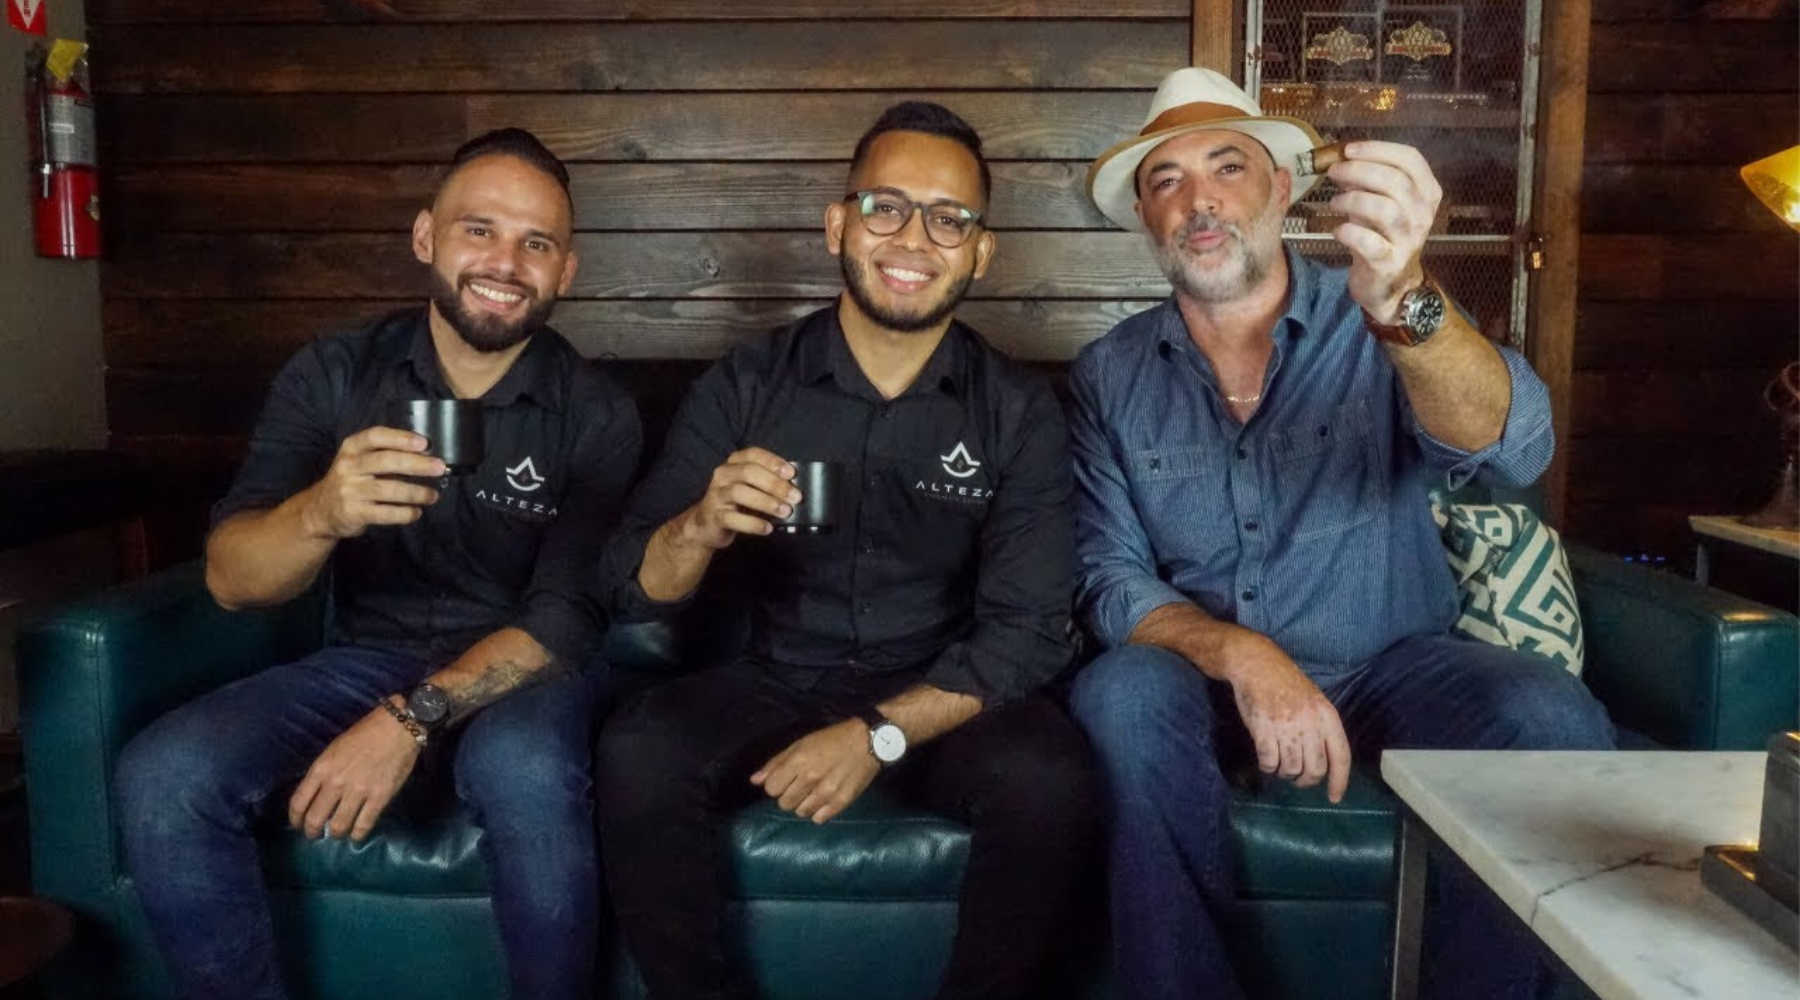 Cargar video: Cigarros Hiroshi Robaina y Caldwell con Café de Puerto Rico y Etiopía | Entre Humos TV